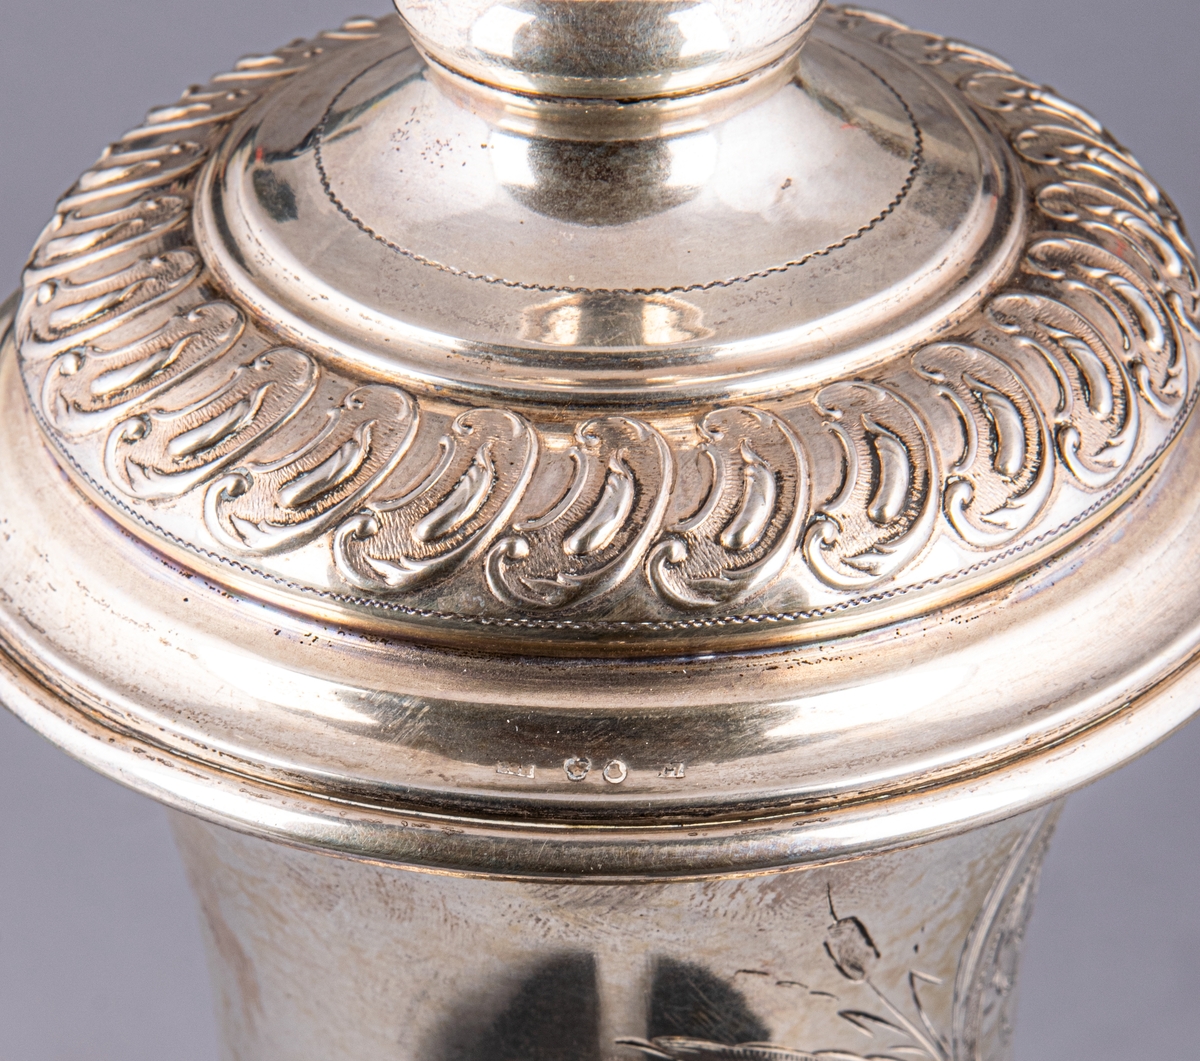 Pokal med lock, av silver. Stämplad: CGH, O, C7 (1905).
Inskription: IFK Hederspris till svenske mästaren i konståkning Karlstad 9/2 1908.